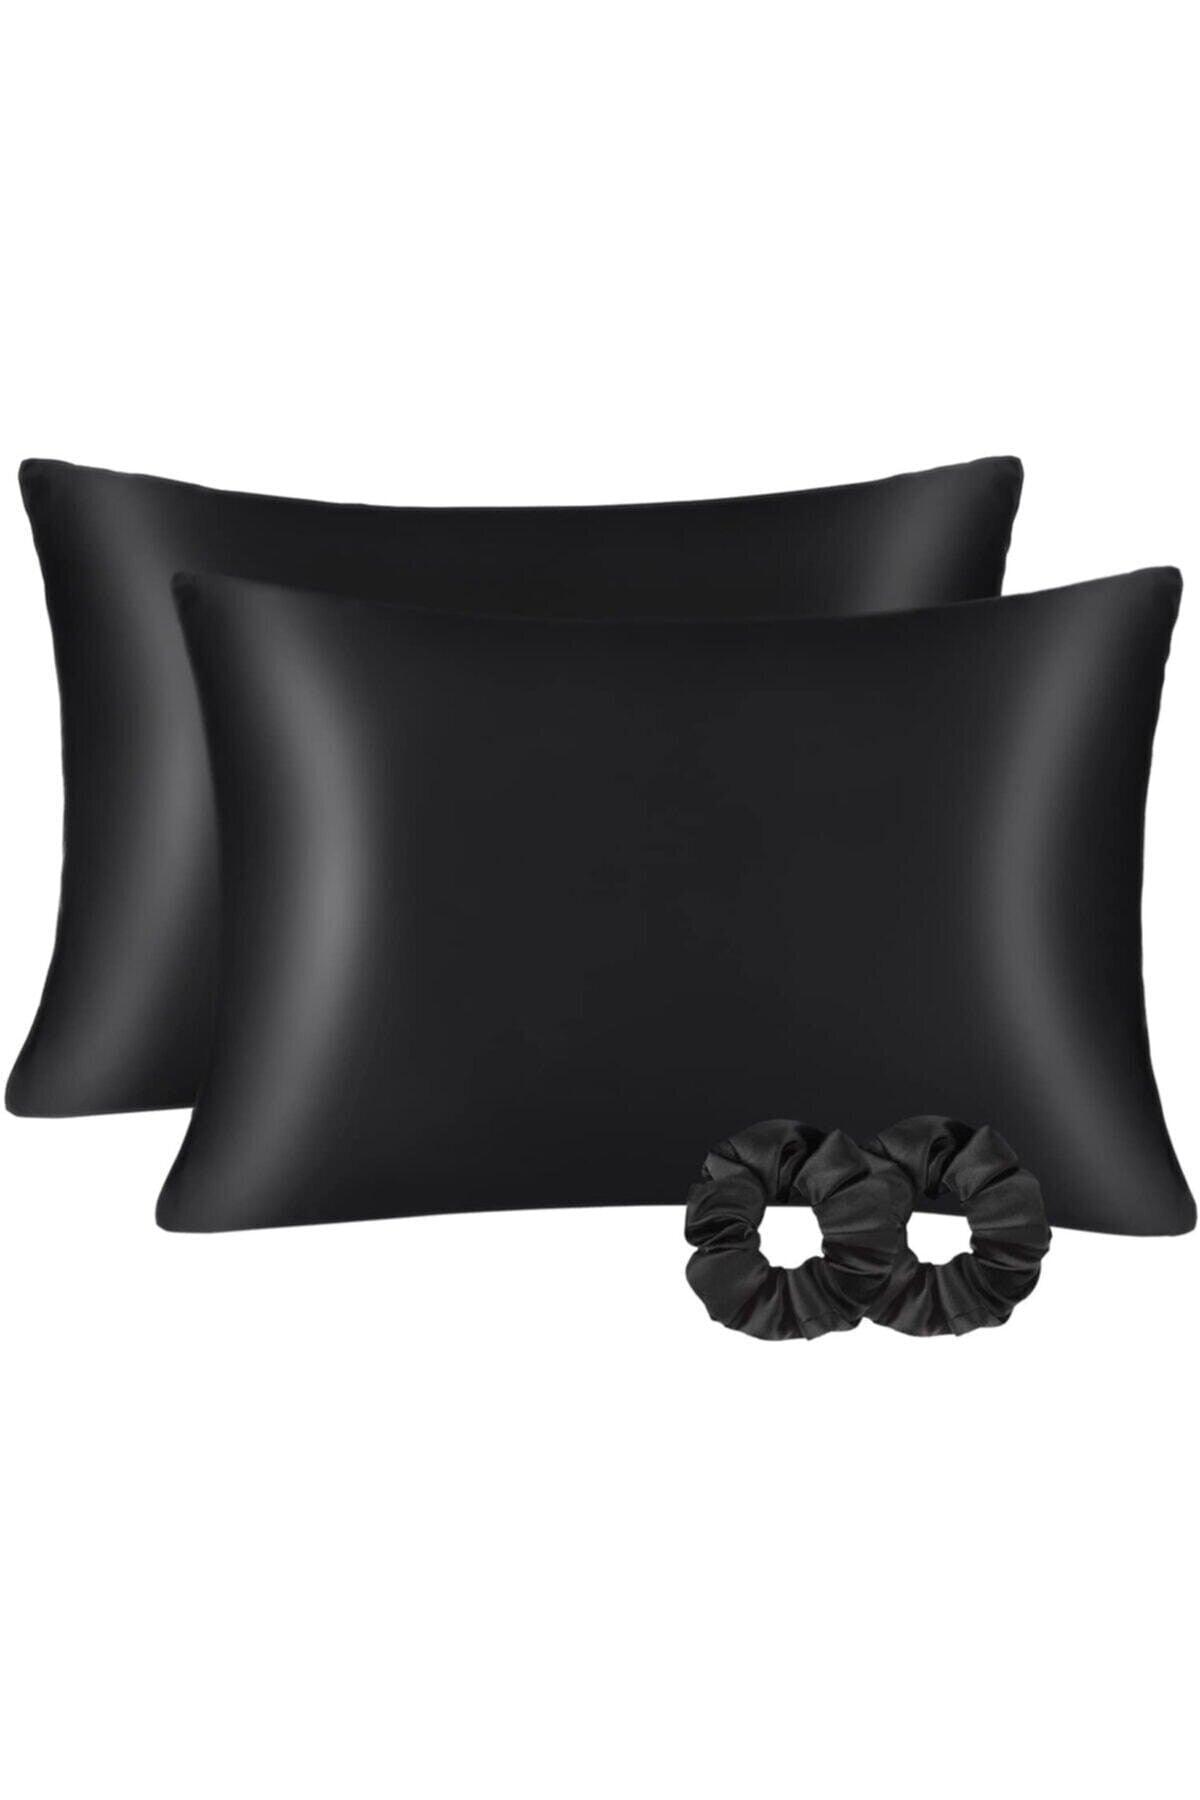 100% Satin 50x70 Cm 2 Pieces Satin Pillow Cover & 2 Pieces Buckle Black Color - Swordslife